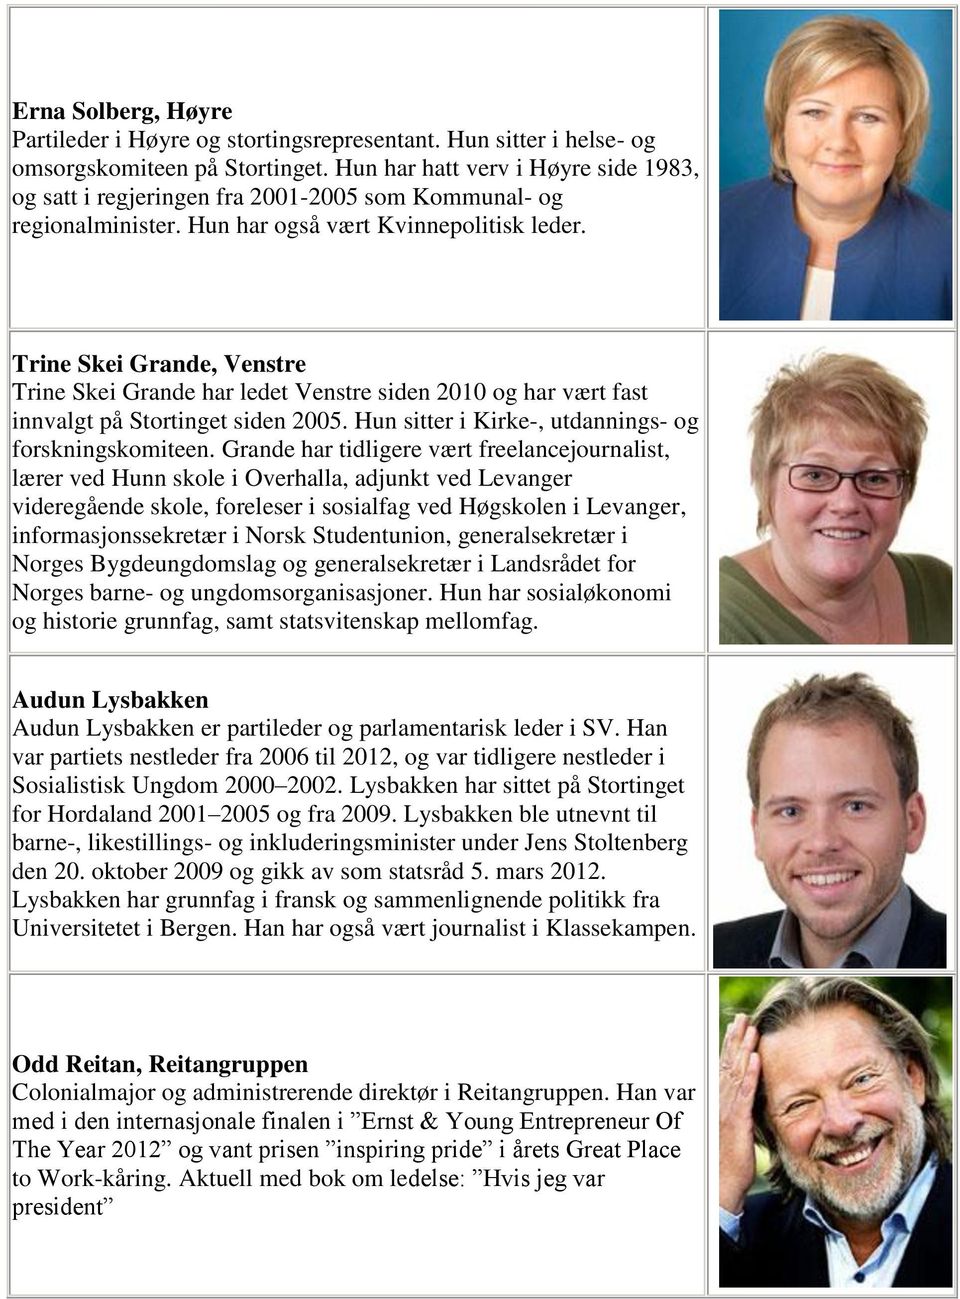 Trine Skei Grande, Venstre Trine Skei Grande har ledet Venstre siden 2010 og har vært fast innvalgt på Stortinget siden 2005. Hun sitter i Kirke-, utdannings- og forskningskomiteen.